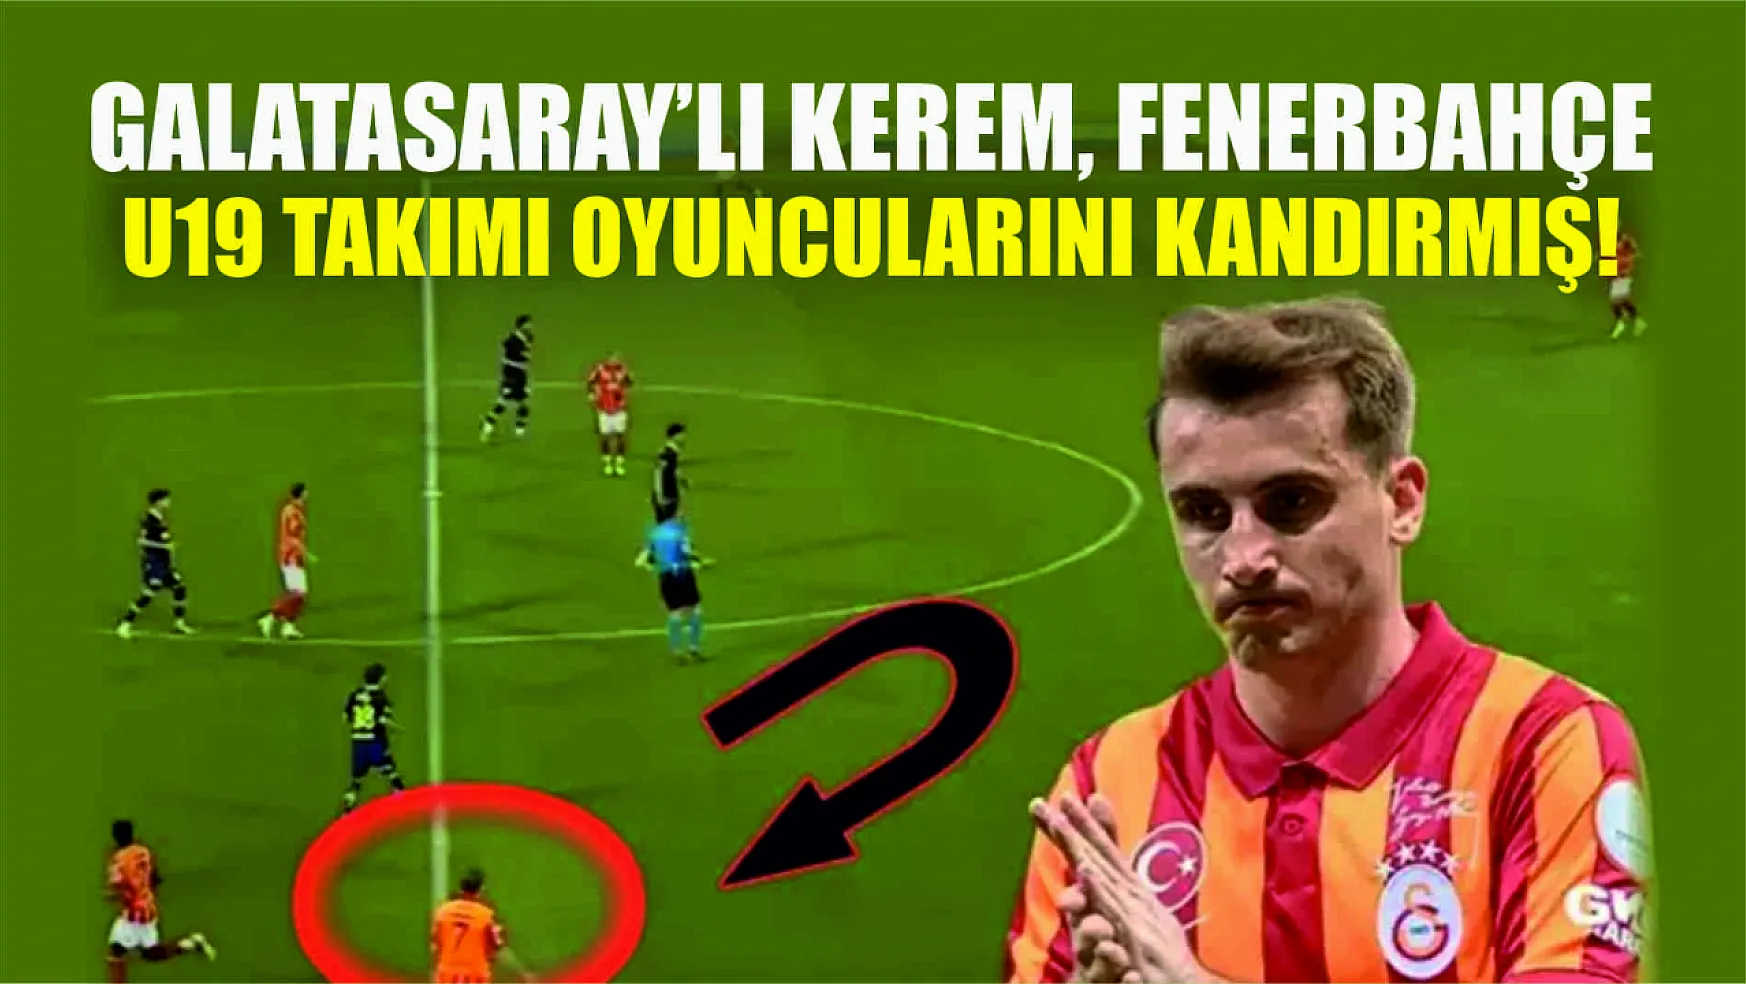 Galatasaray'lı Kerem, Fenerbahçe U19 Takımı Oyuncularını Kandırmış!